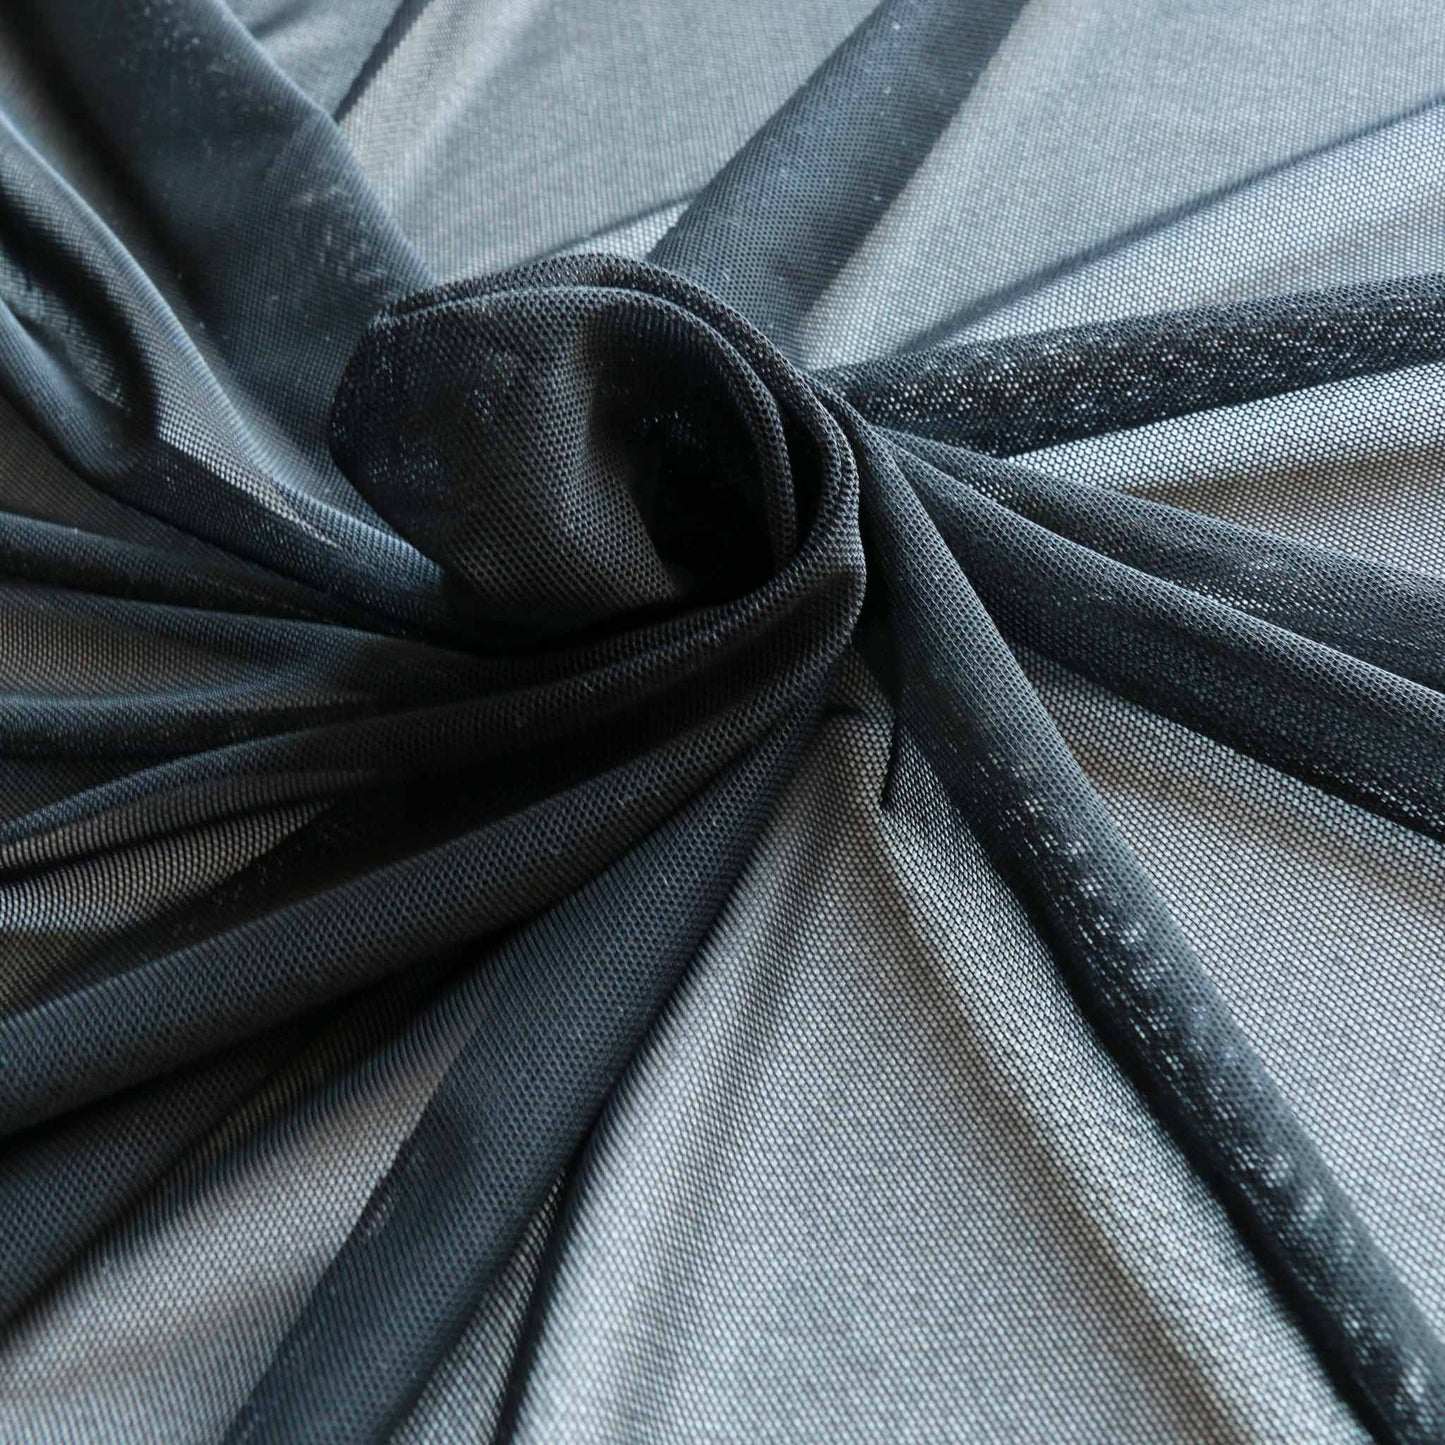 black netting fabric for dressmaking power mesh